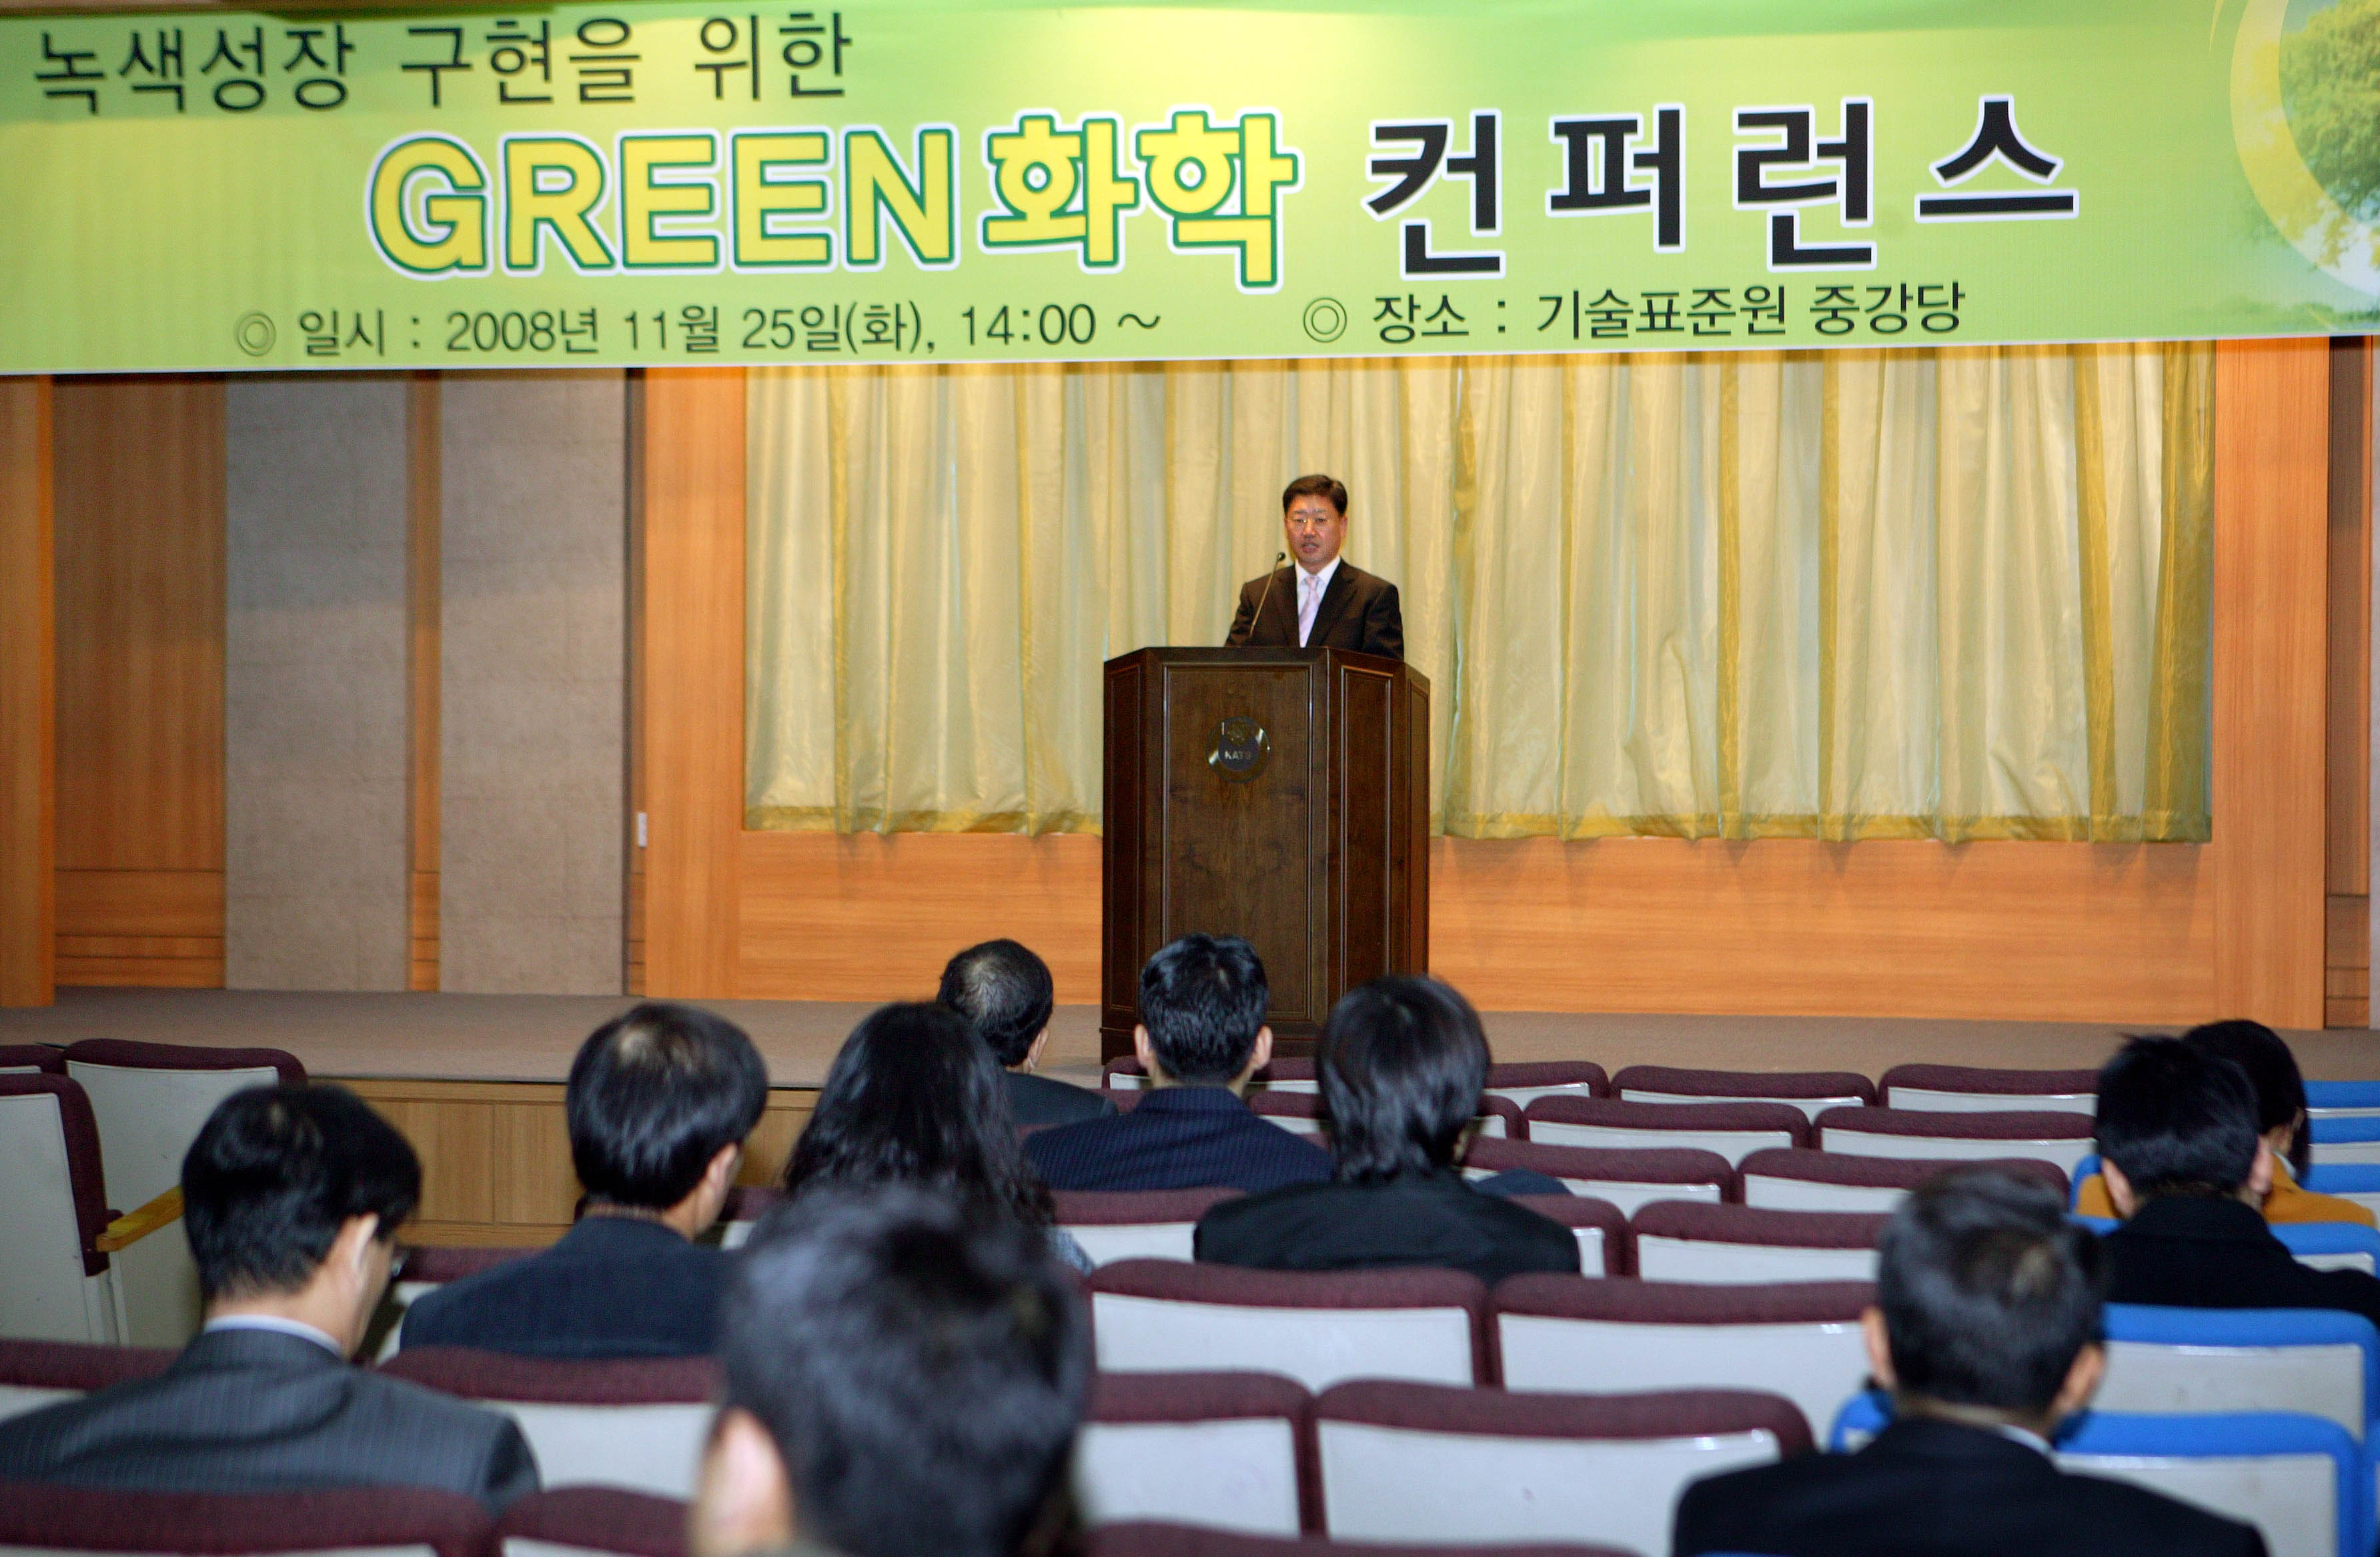 녹색성장 구현을 위한 'GREEN화학 컨퍼런스'(2008.11.25화, 기술표준원 중강당)